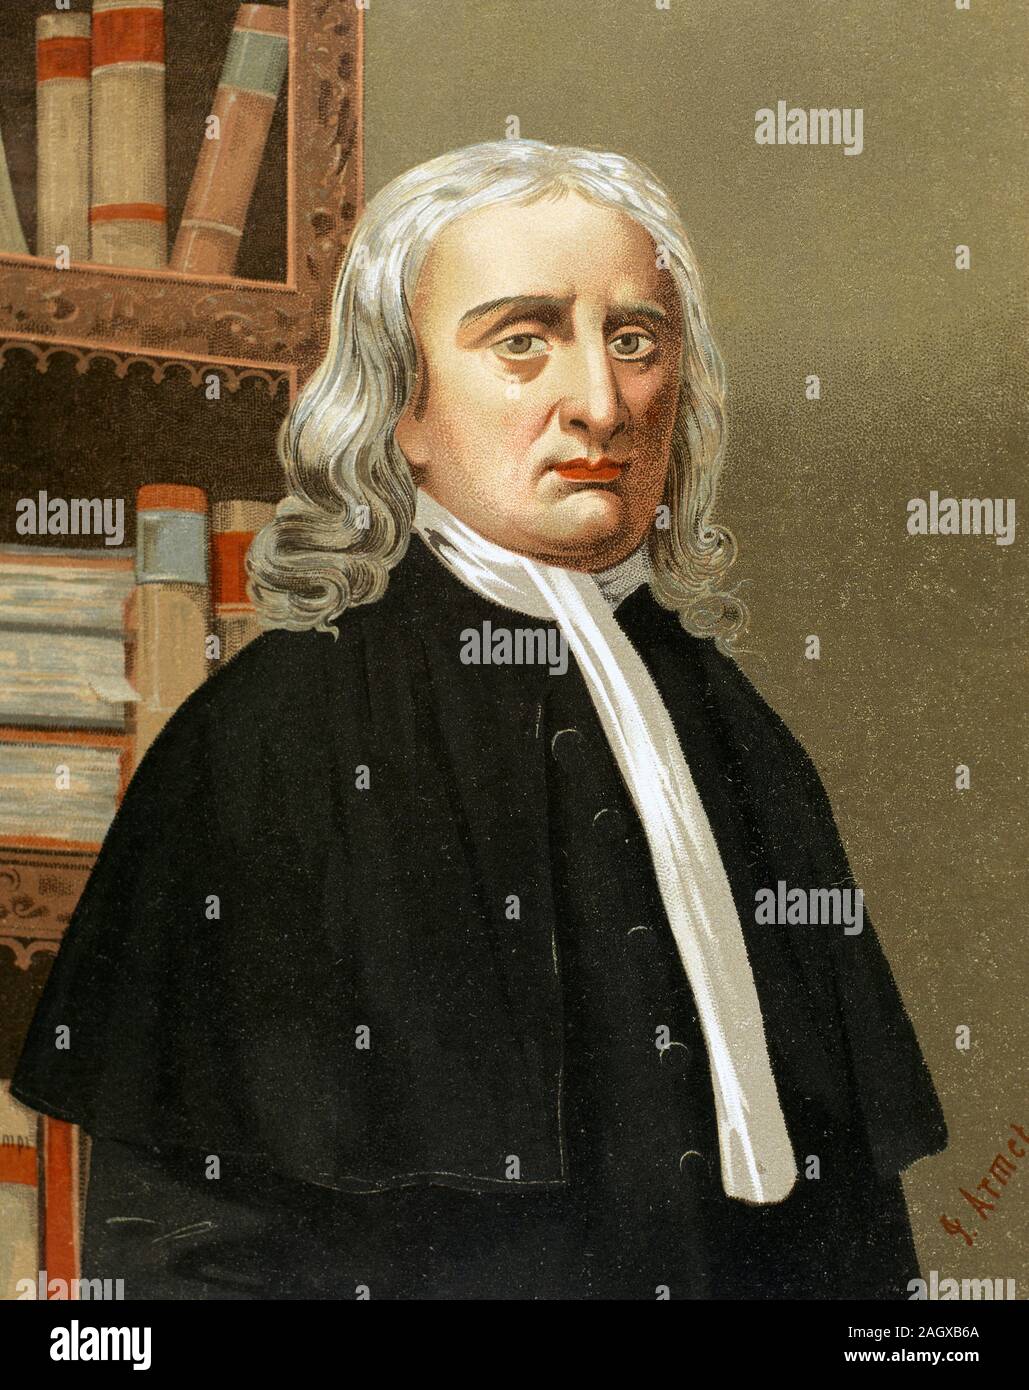 Isaac Newton (1642-1726/1727). L'astronome et mathématicien anglais, physicien. Lithography, 1876. Banque D'Images